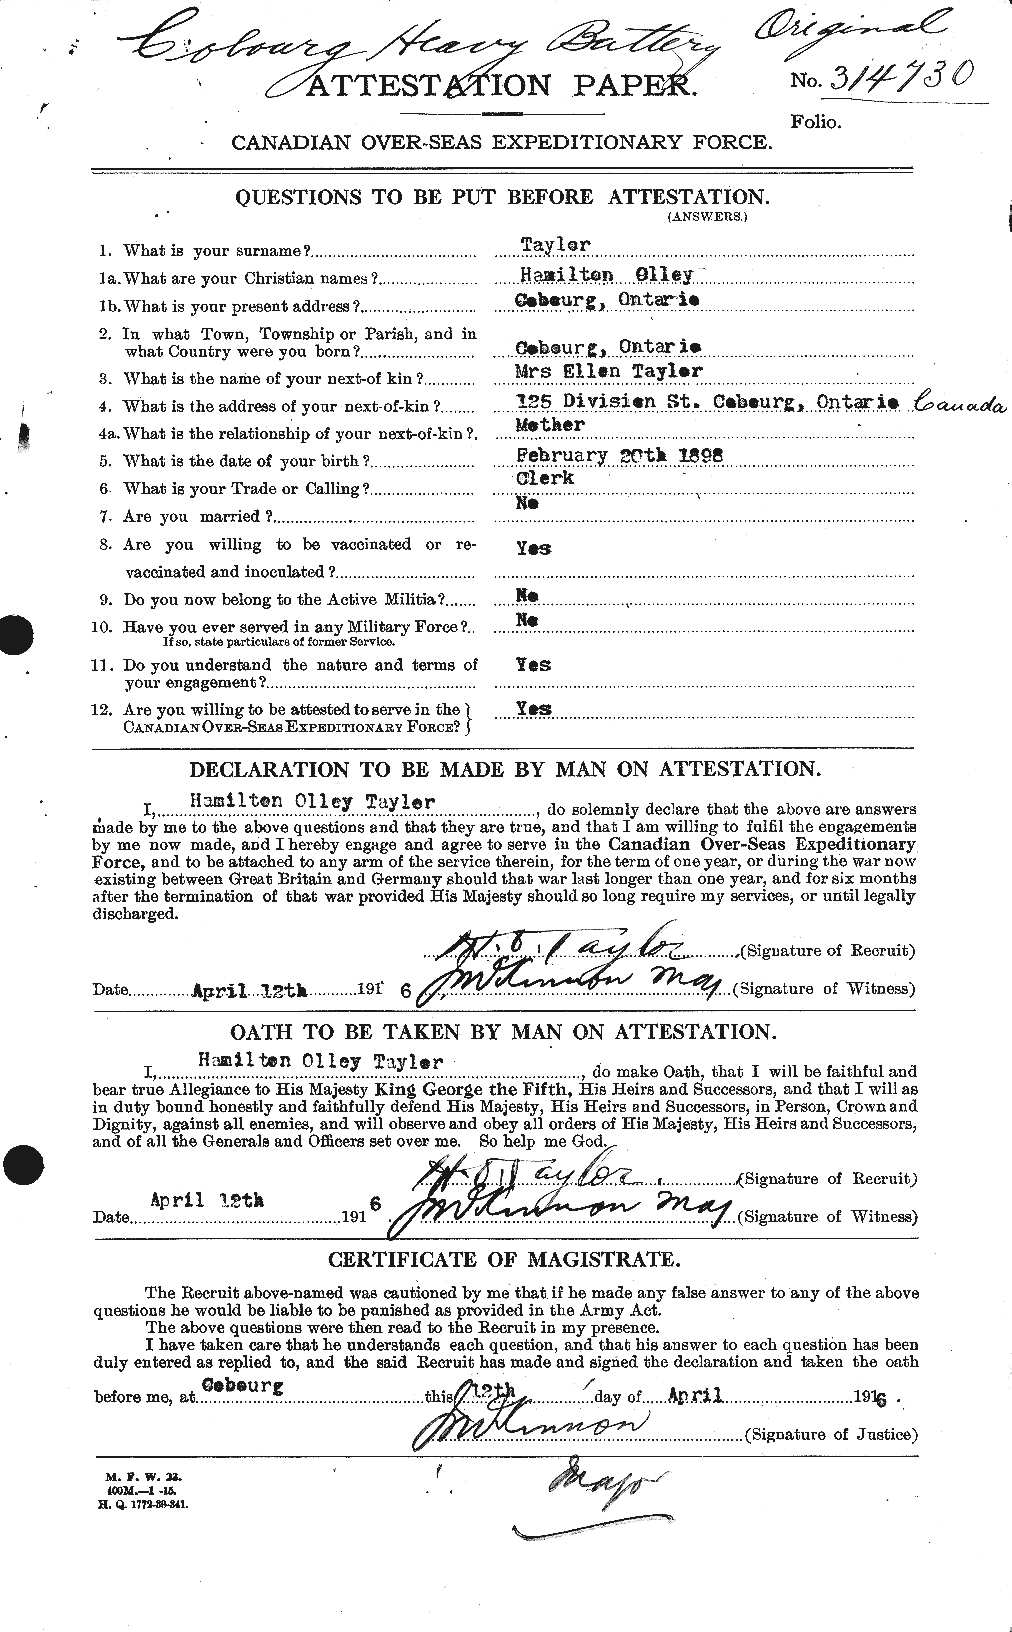 Dossiers du Personnel de la Première Guerre mondiale - CEC 626398a